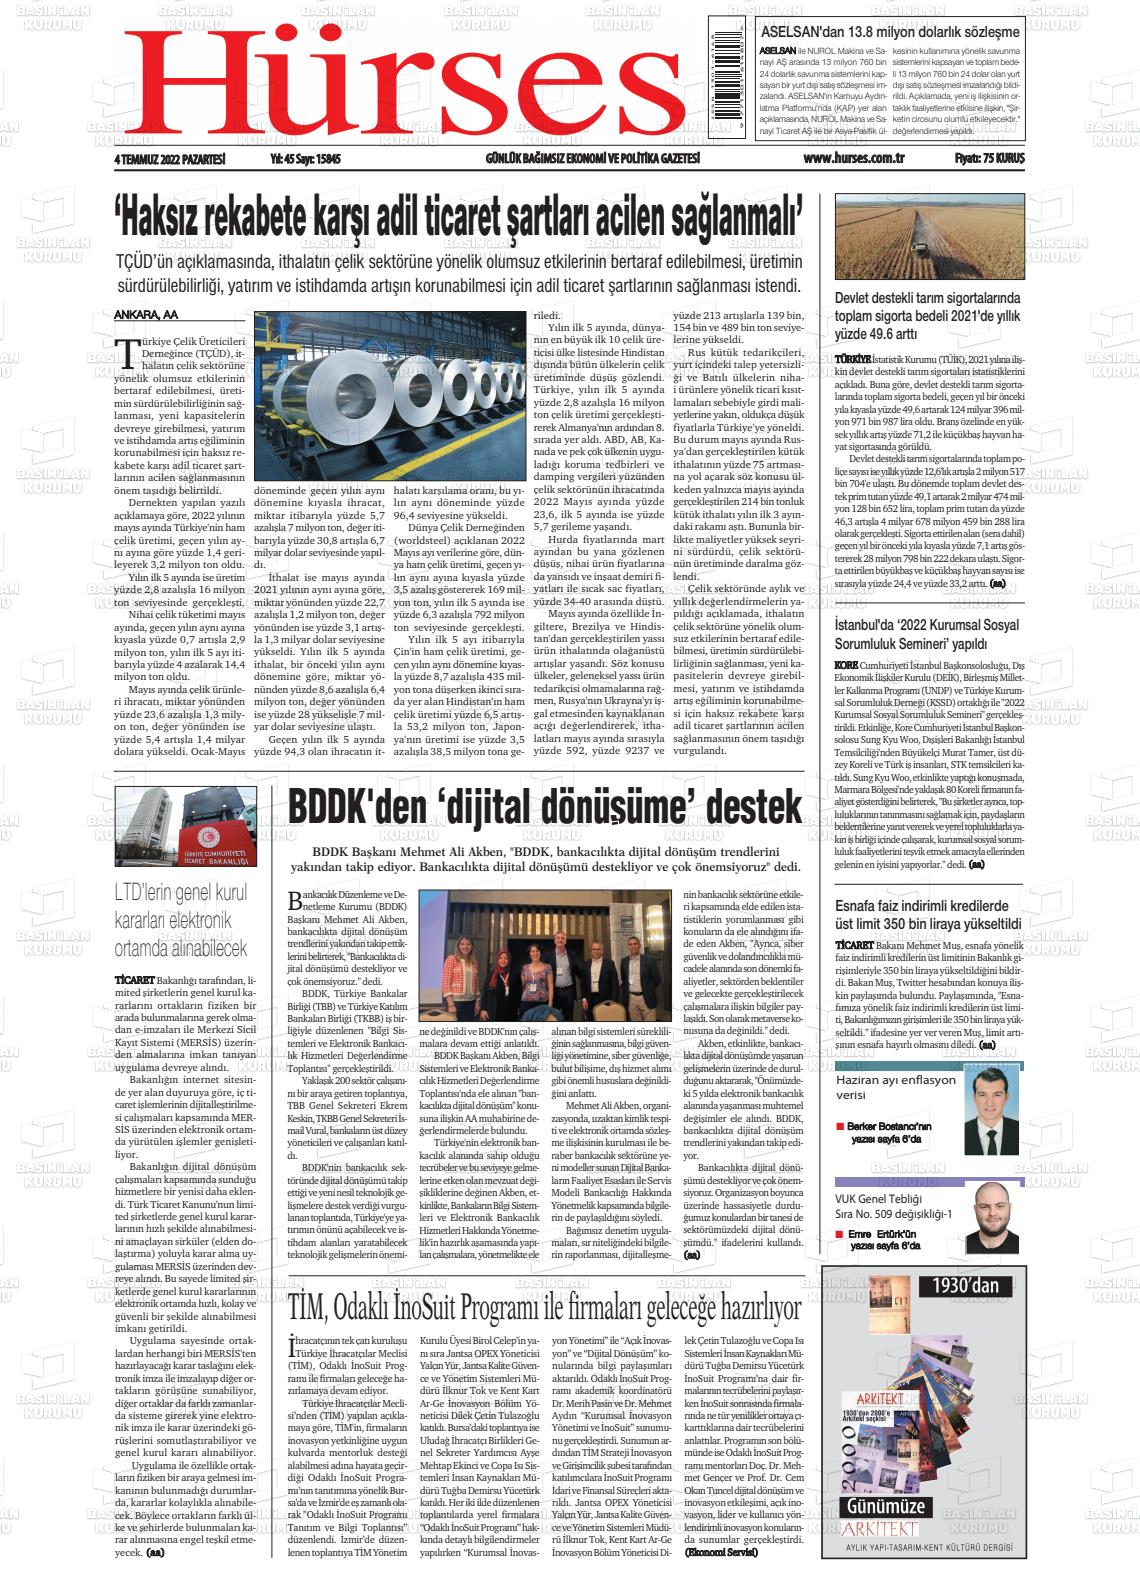 04 Temmuz 2022 İstanbul Hürses gazetesi Gazete Manşeti